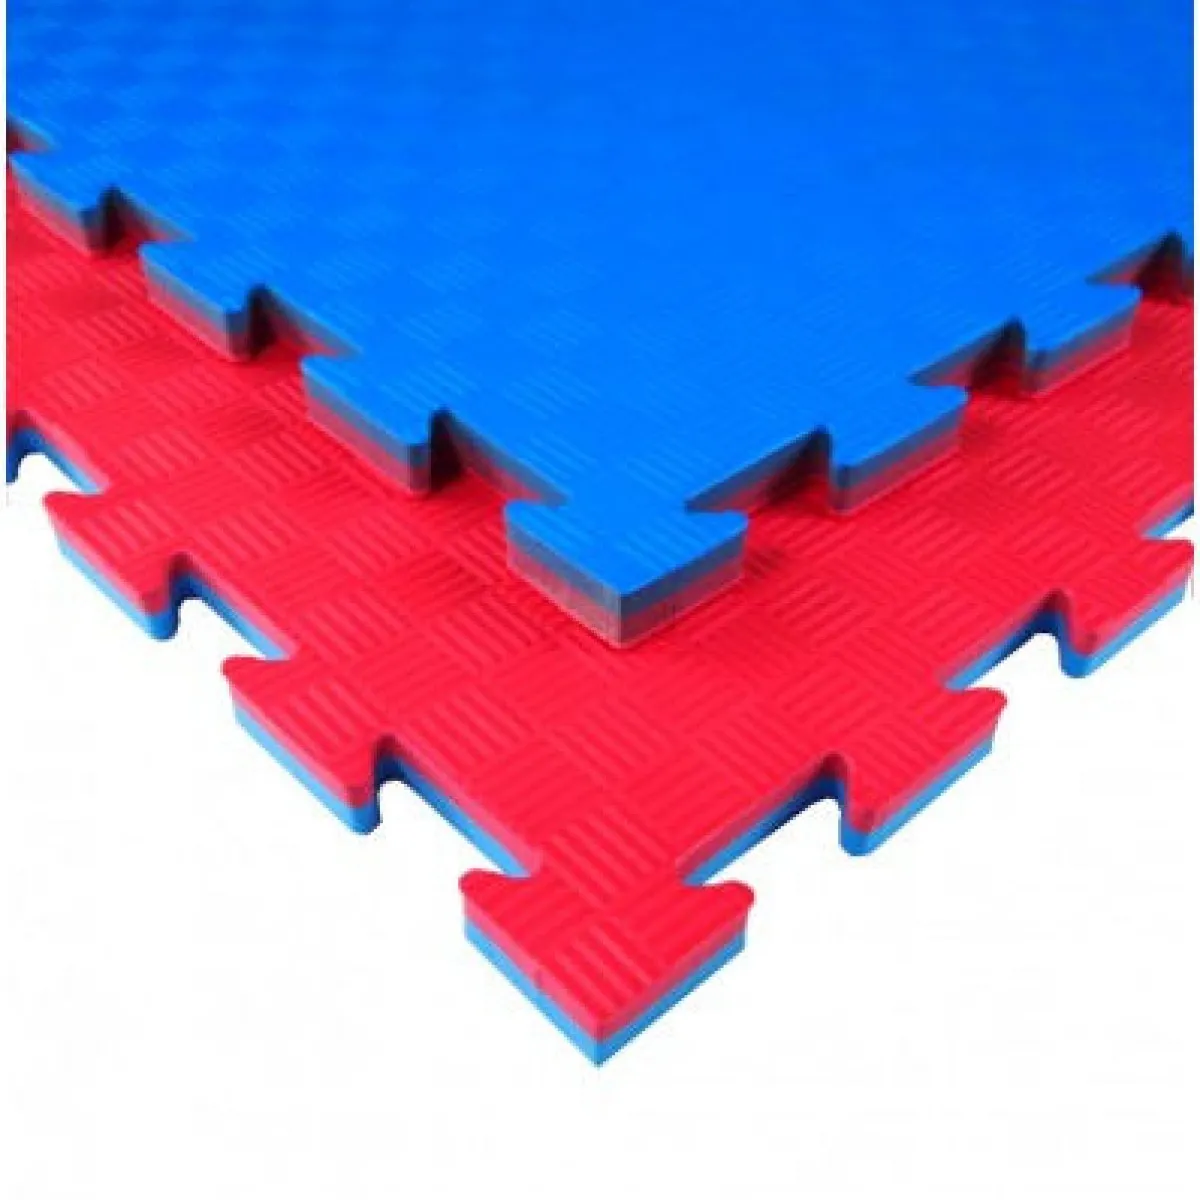 Kampfsportmatte Tatami TK20X blau/rot 100 cm x 100 cm x 2,1 cm